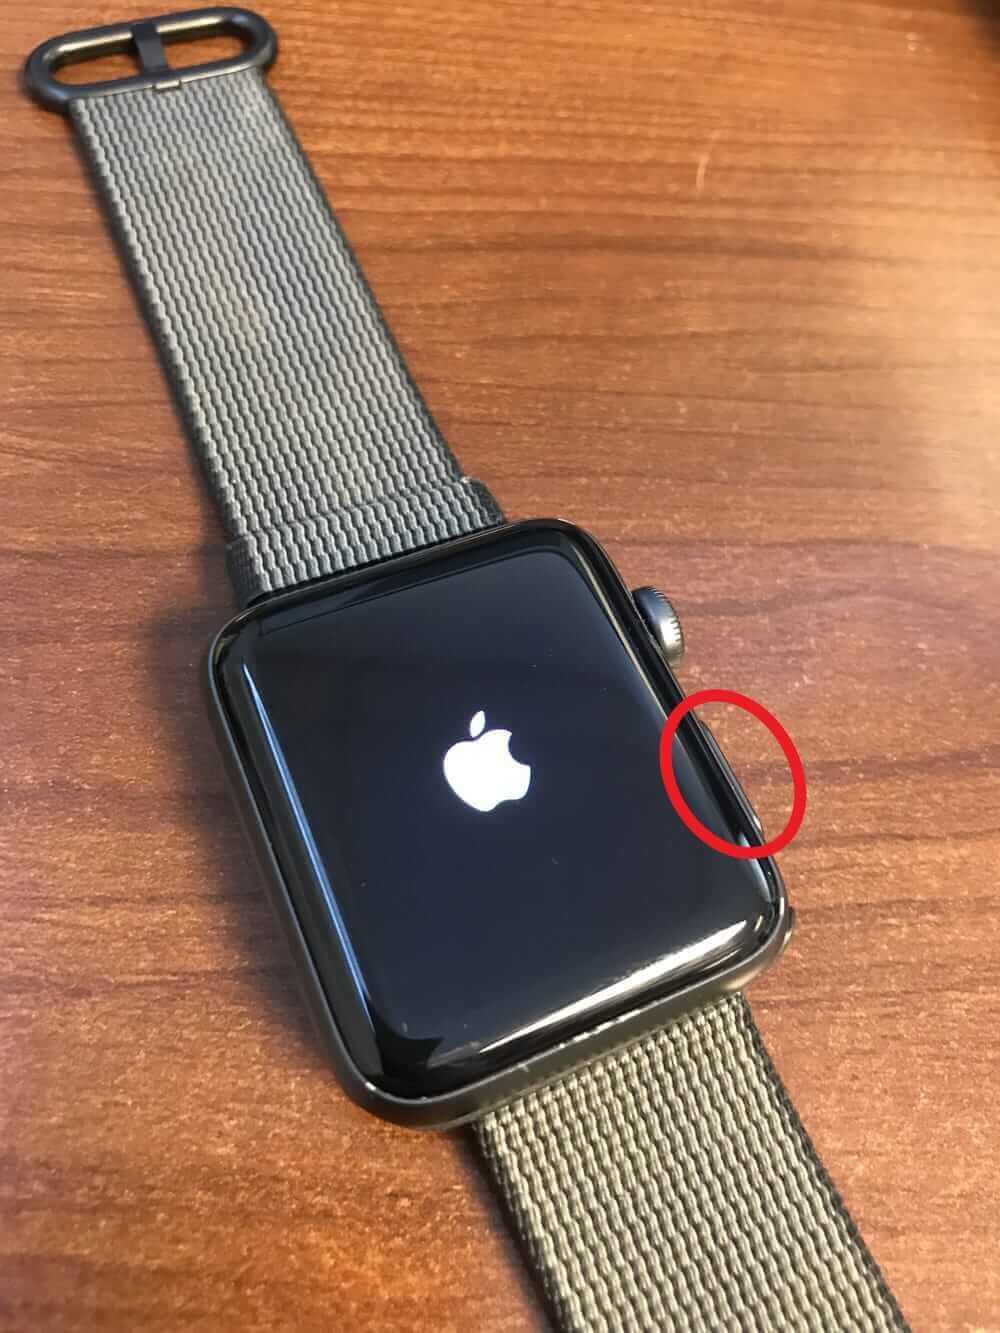 按住帶圓圈的按鈕以打開Apple Watch